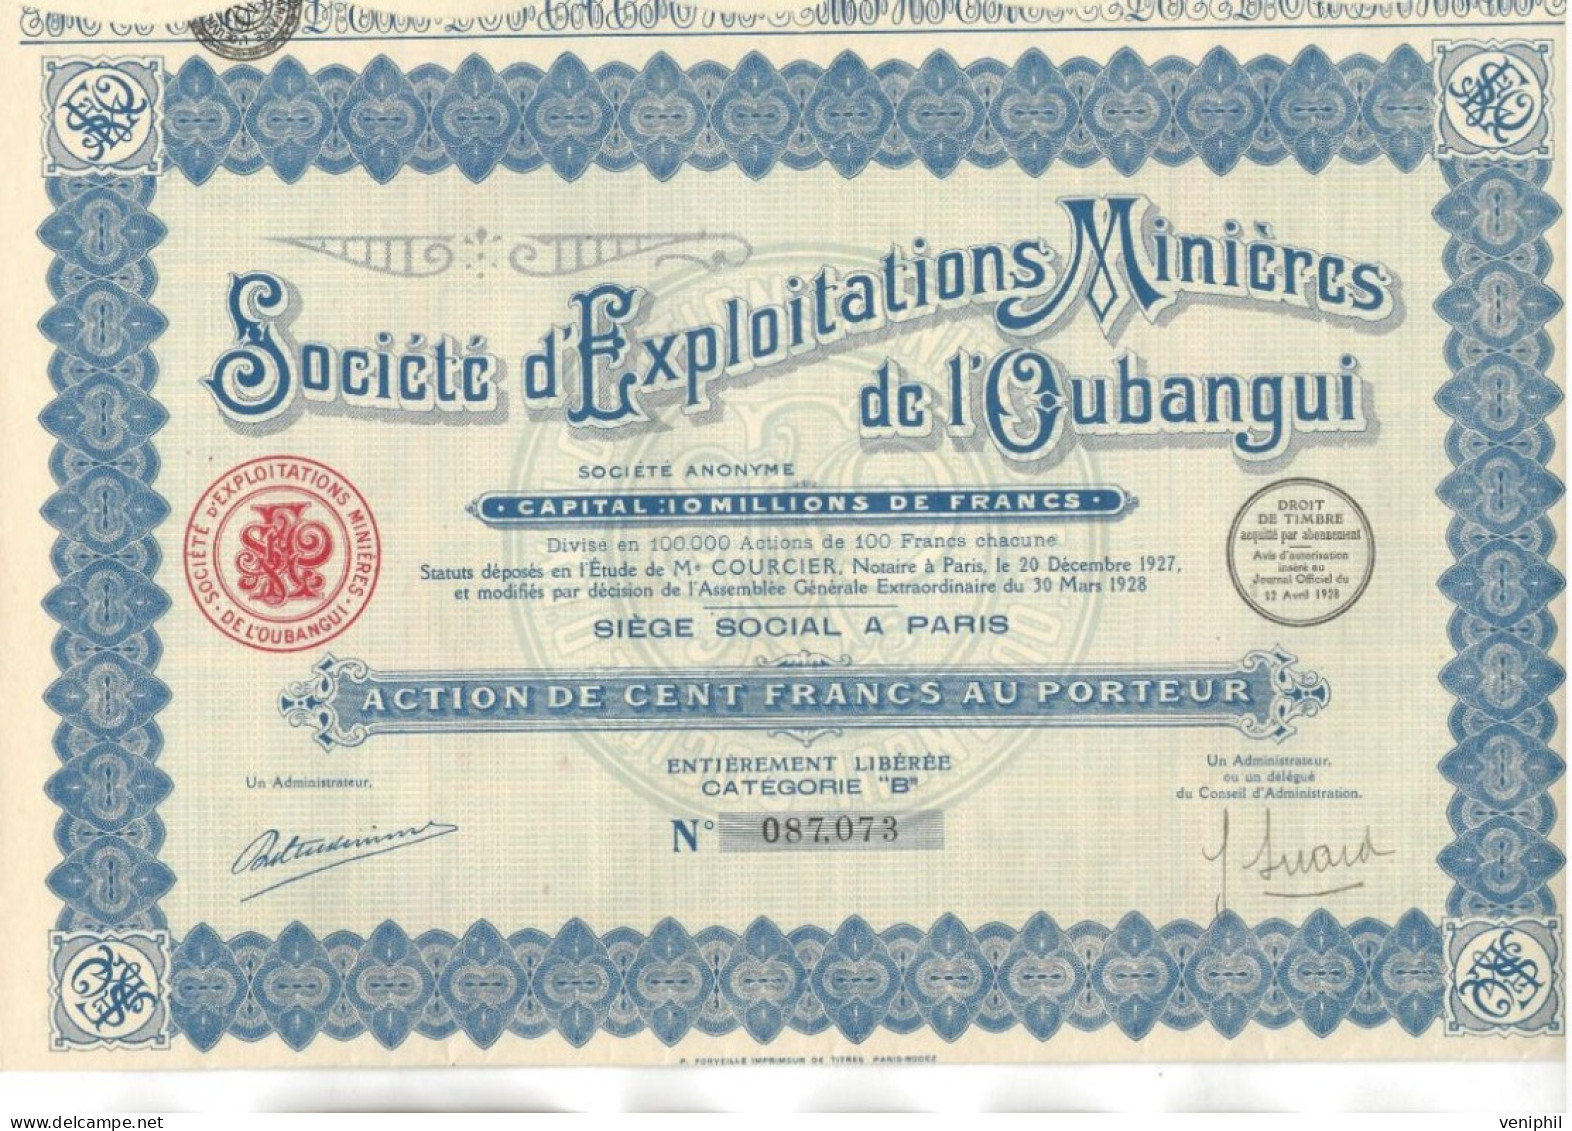 SOCIETE D'EXPLOITATIONS MINIERES DE L'OUBANGUI -ACTION DE CENT FRS CATEGORIE B -ANNEE 1928 - Mineral